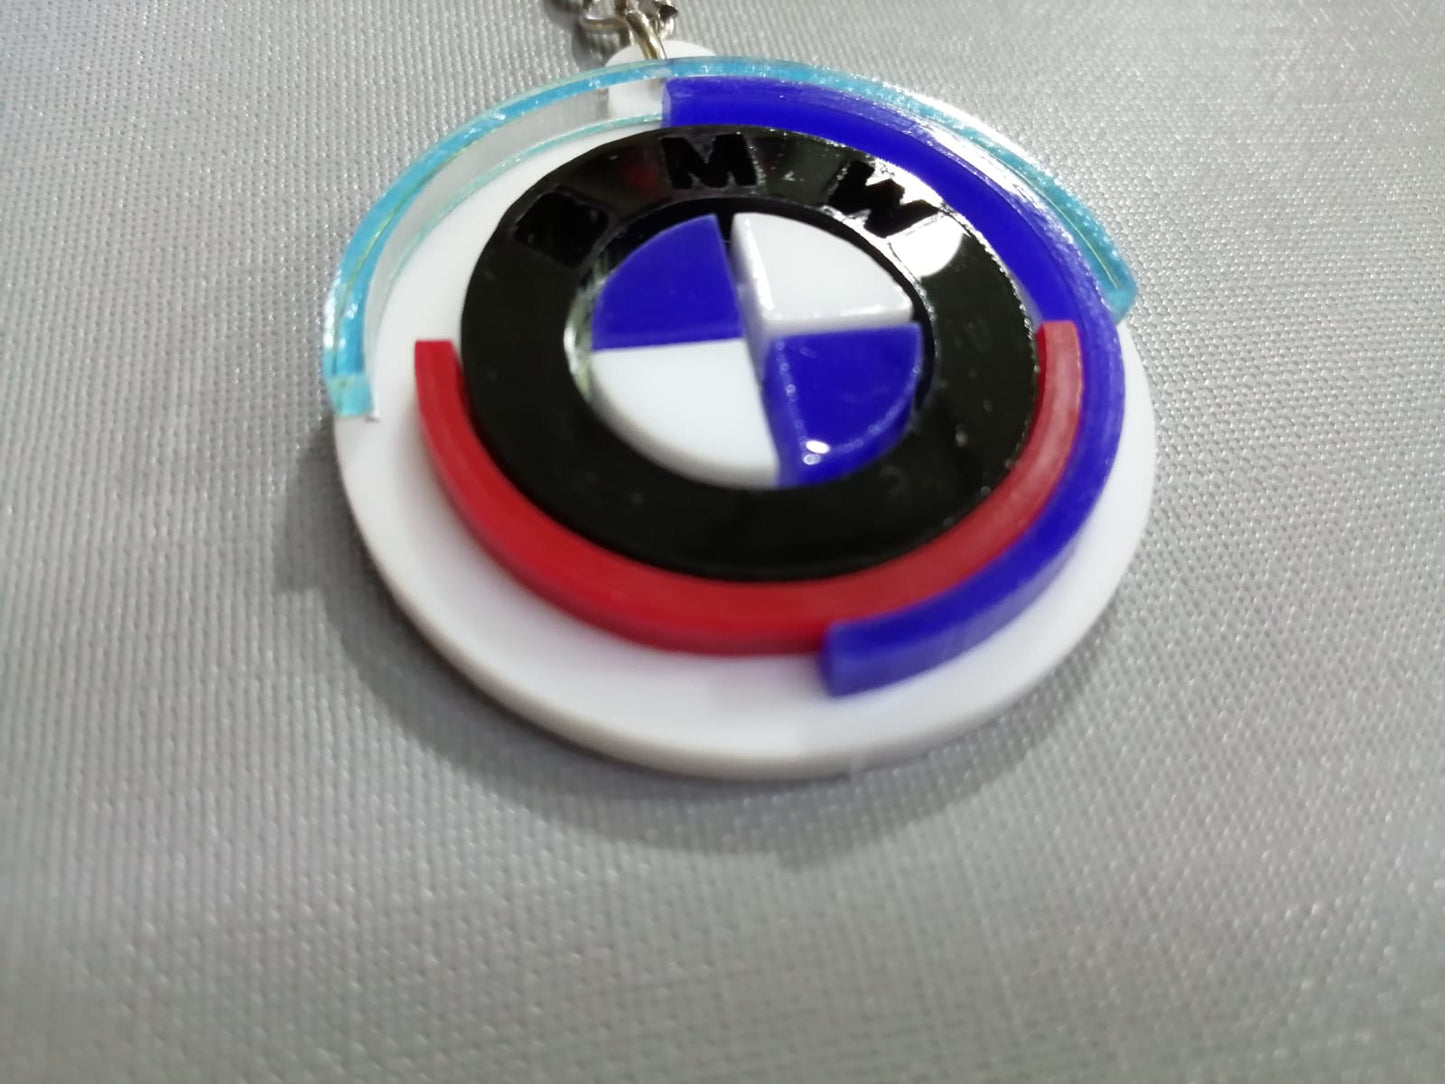 4D BMW M Performance Acrylic keychain